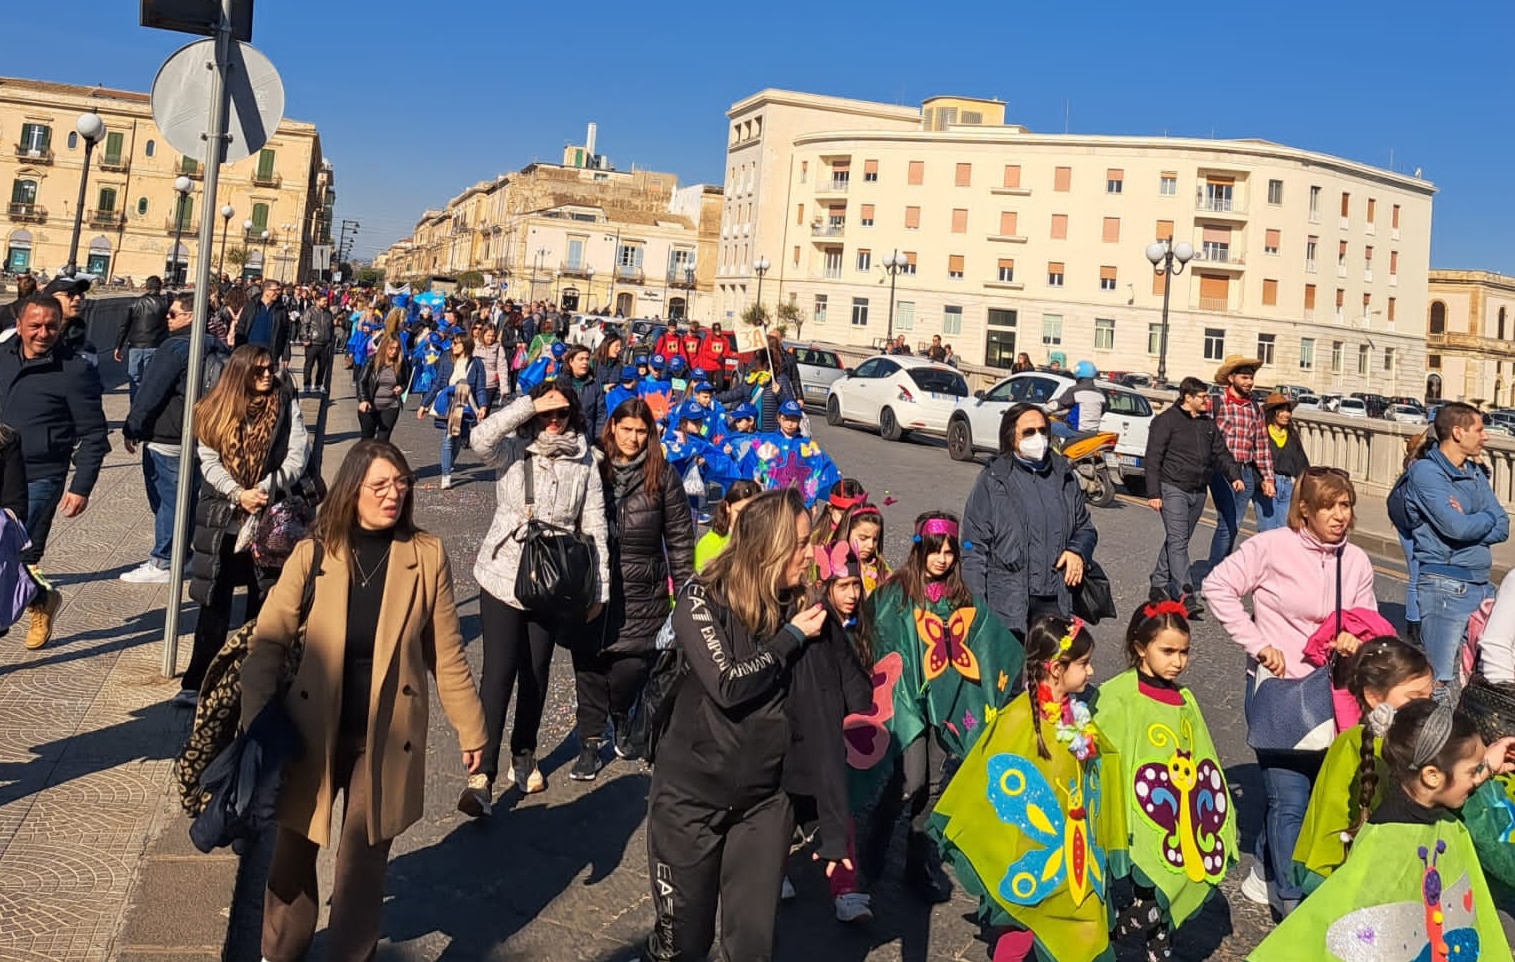 Carnevale in piazza per gli studenti siracusani